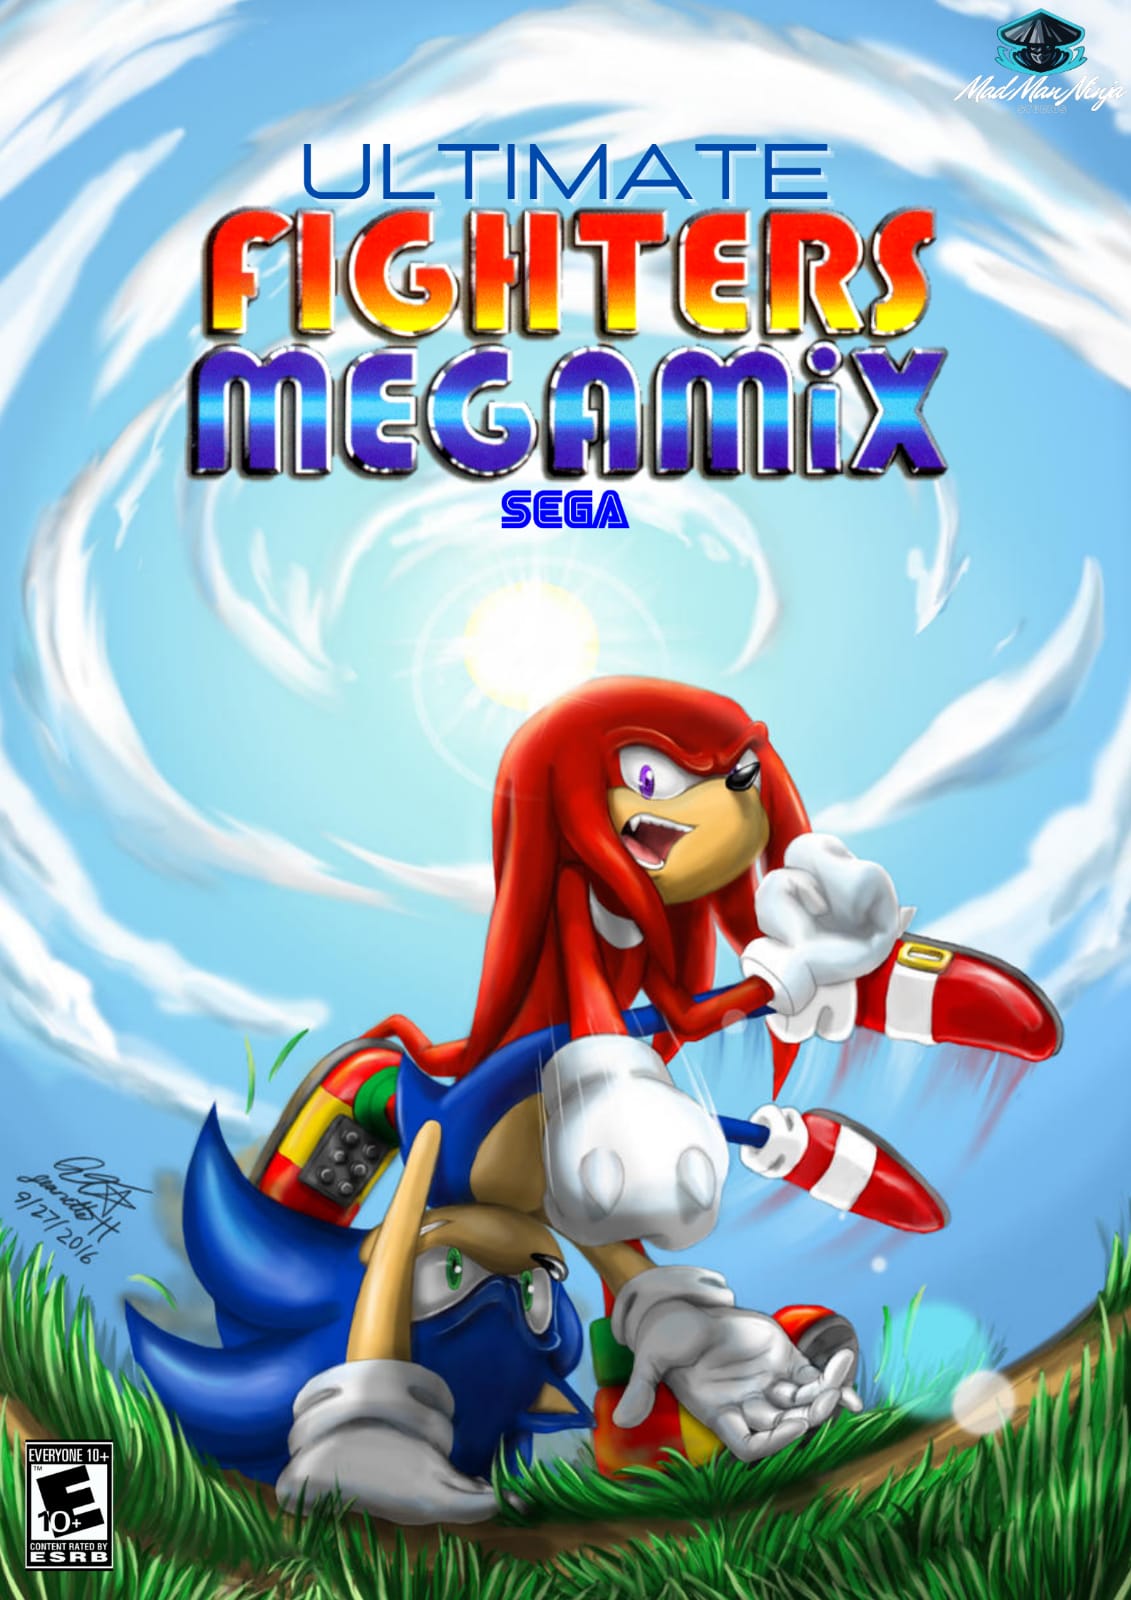 Malawi sekstant Morgenøvelser SEGA Fighters Megamix Ultimate | Game Ideas Wiki | Fandom